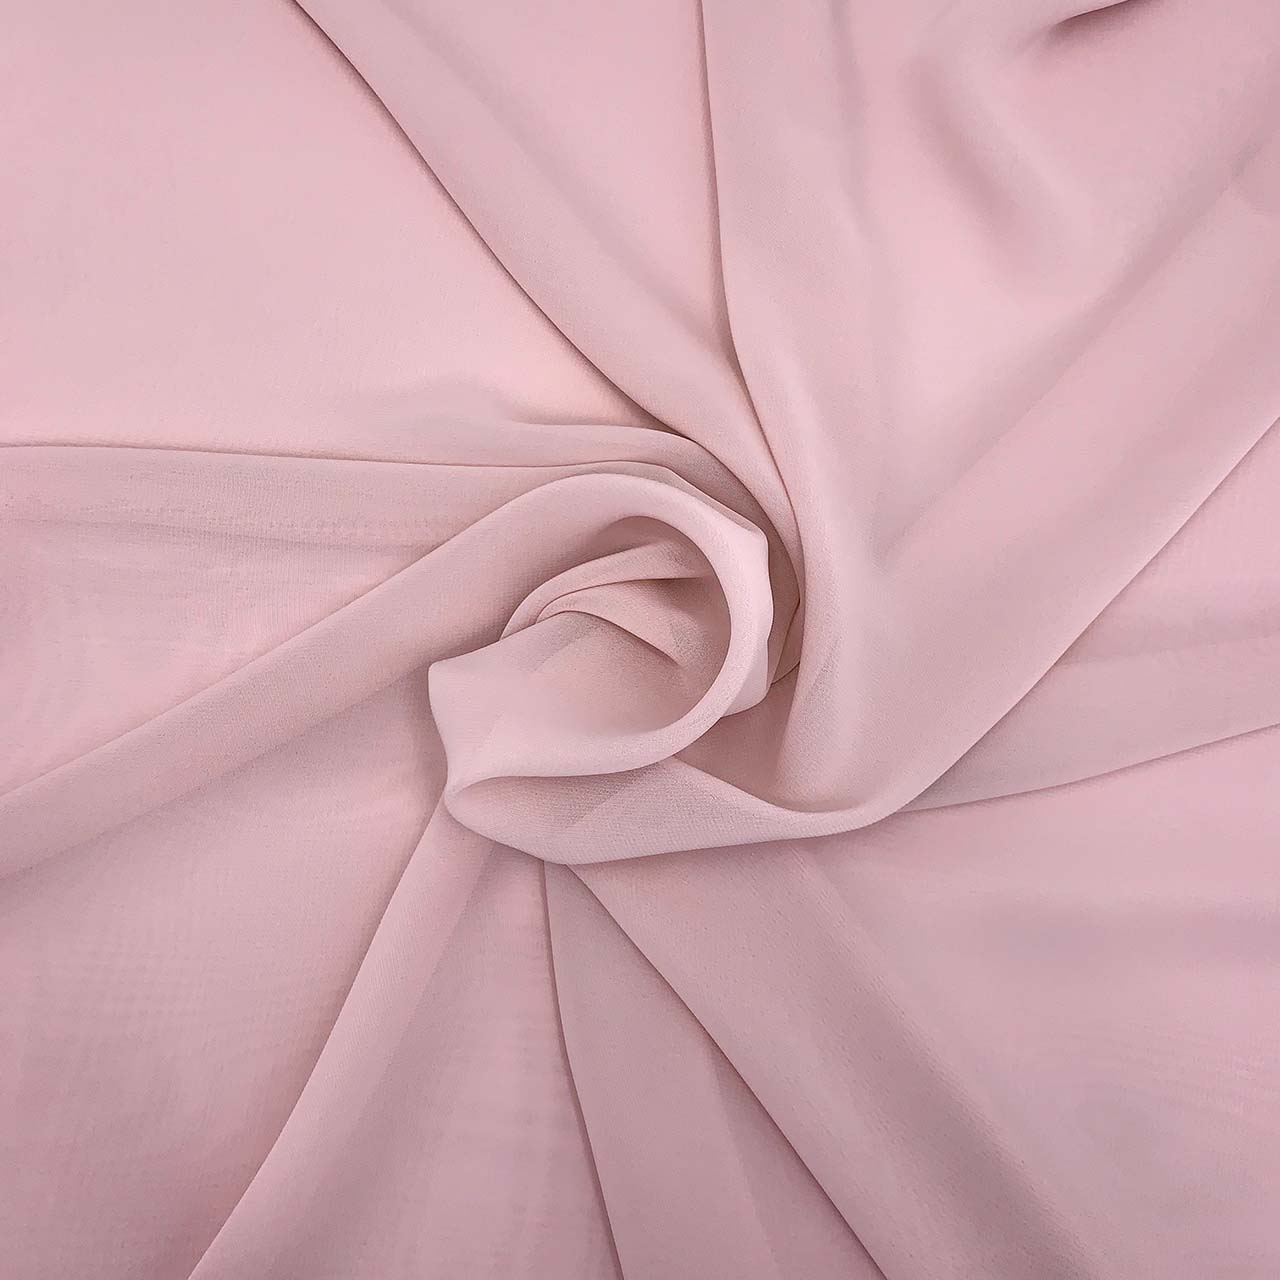 polyester chiffon primrose pink fabric